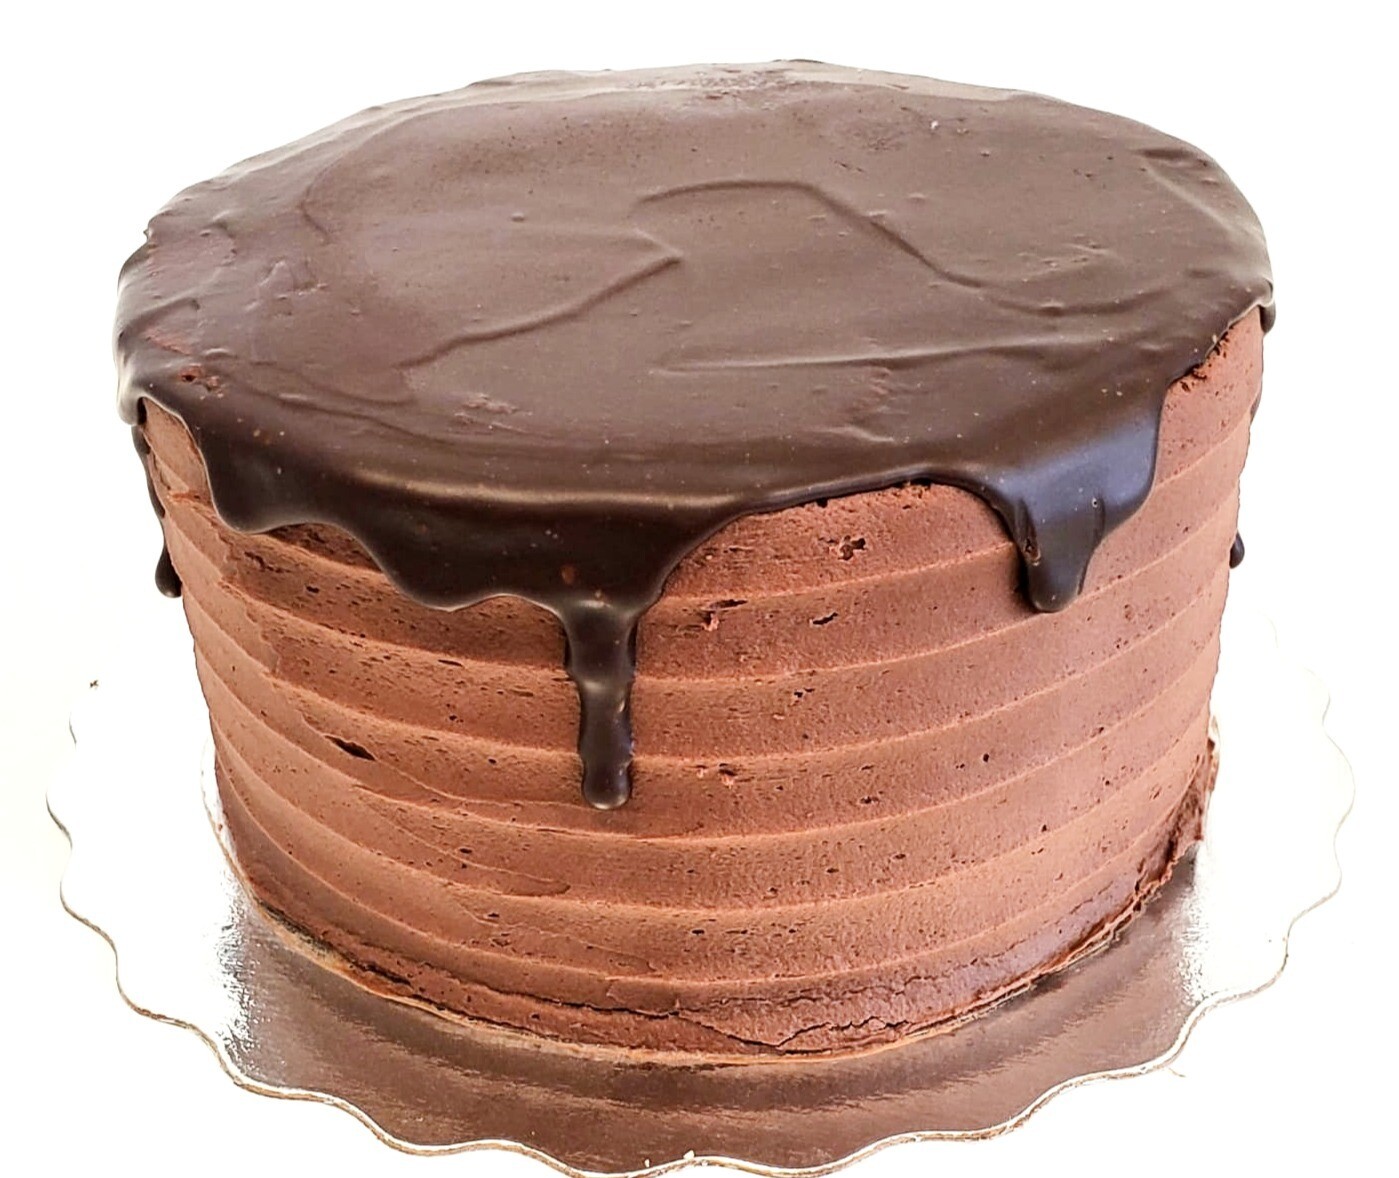 The TriFecta Artisanal Cake 6"